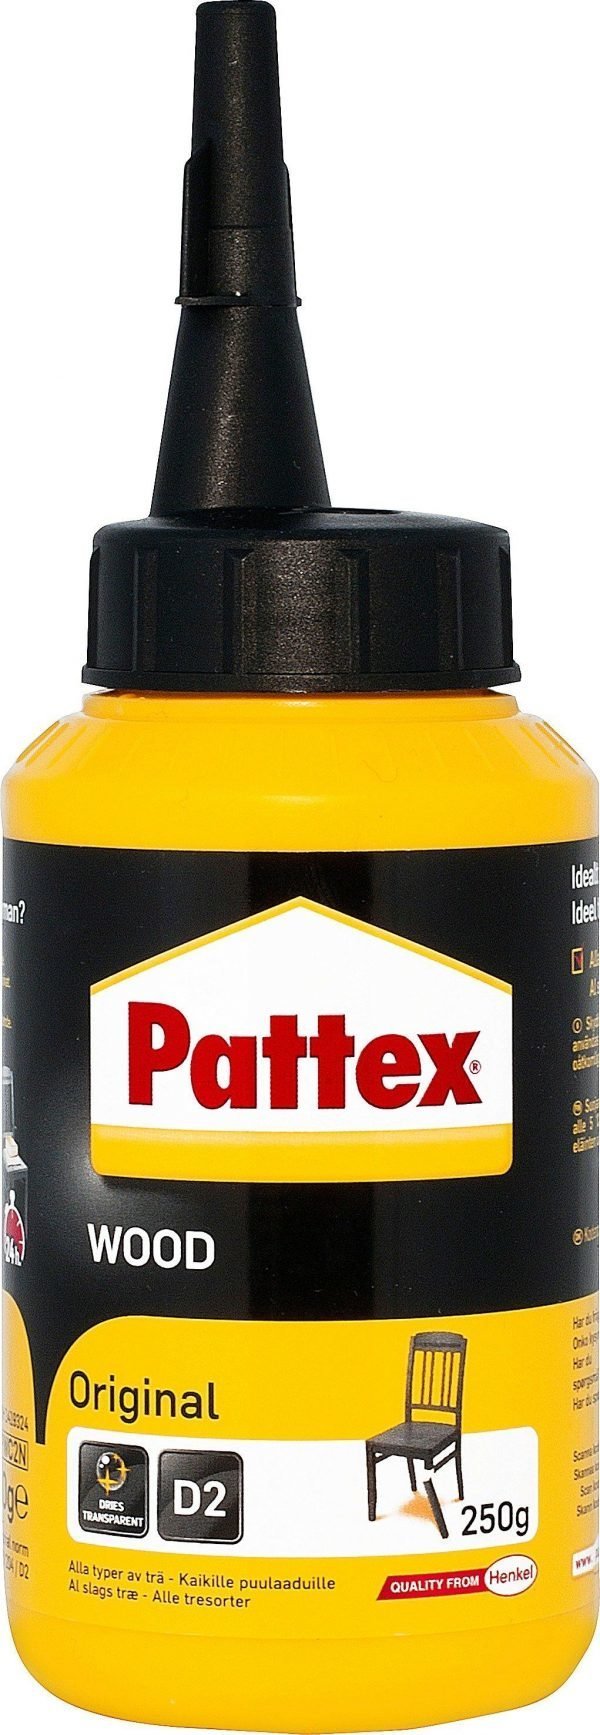 Pattex Puuliima Original 250g